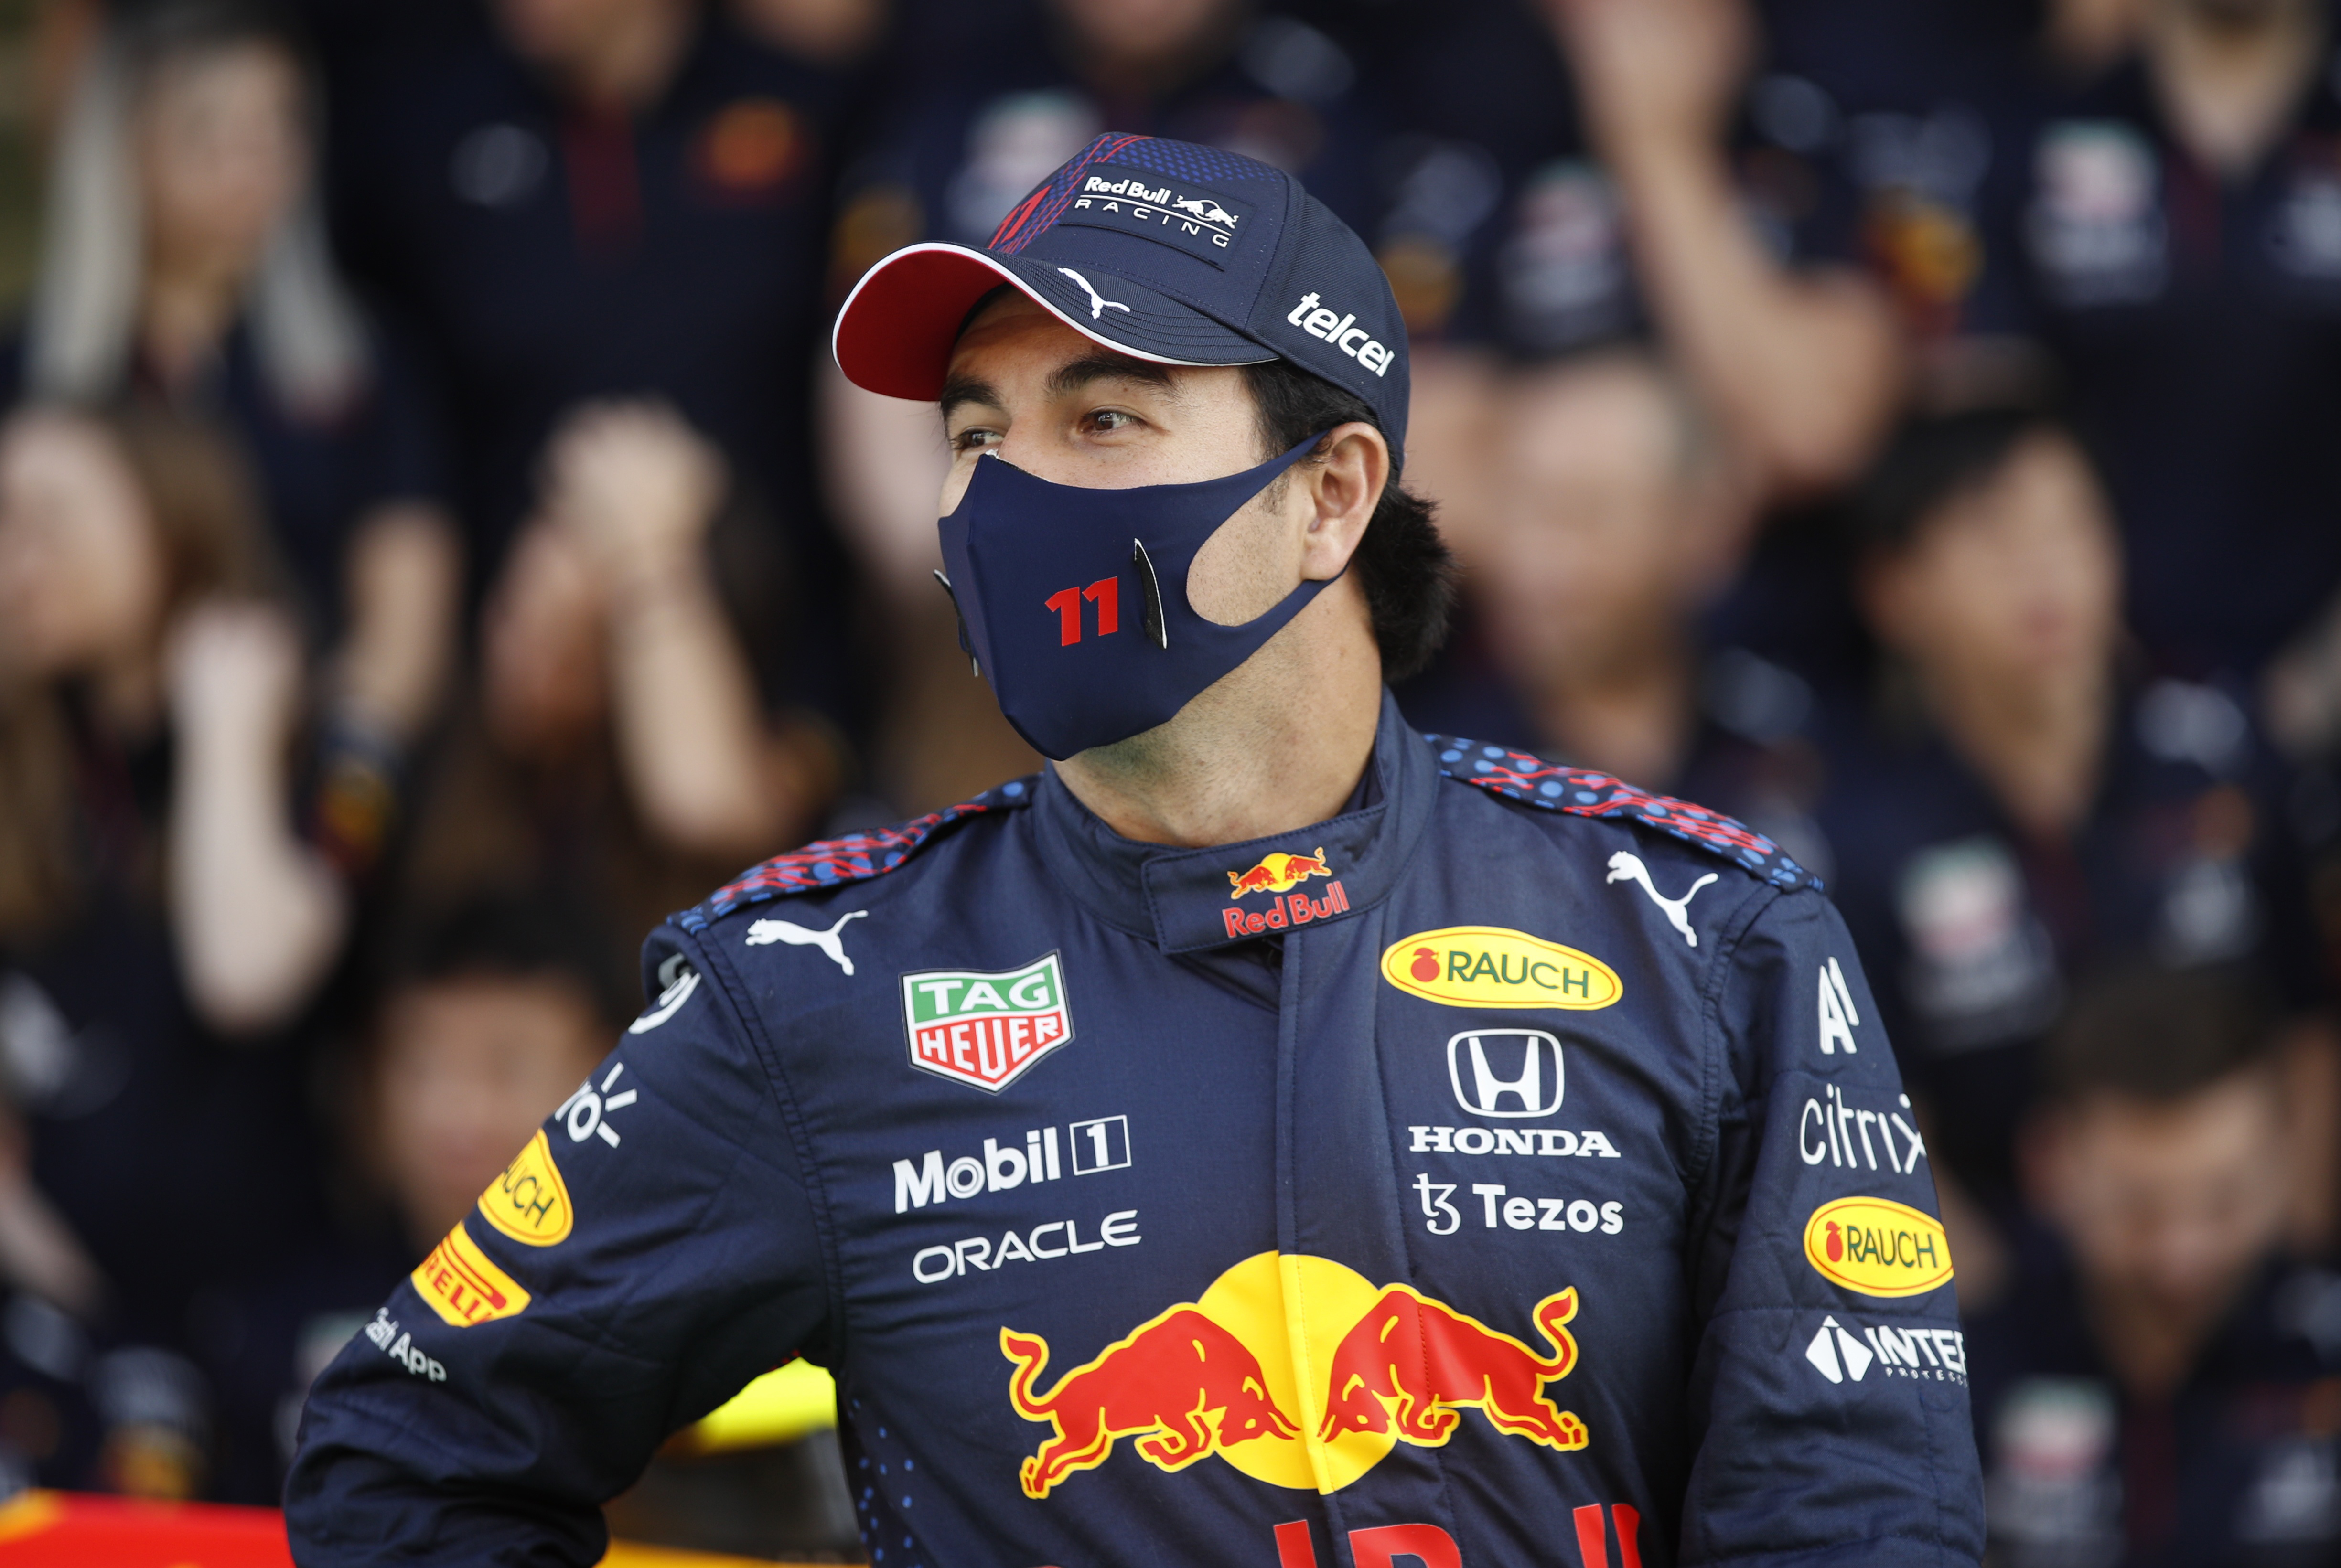 Ni Singapur, ni Mónaco: cuáles fueron las carreras más buscadas de Checo Pérez de la F1 2022